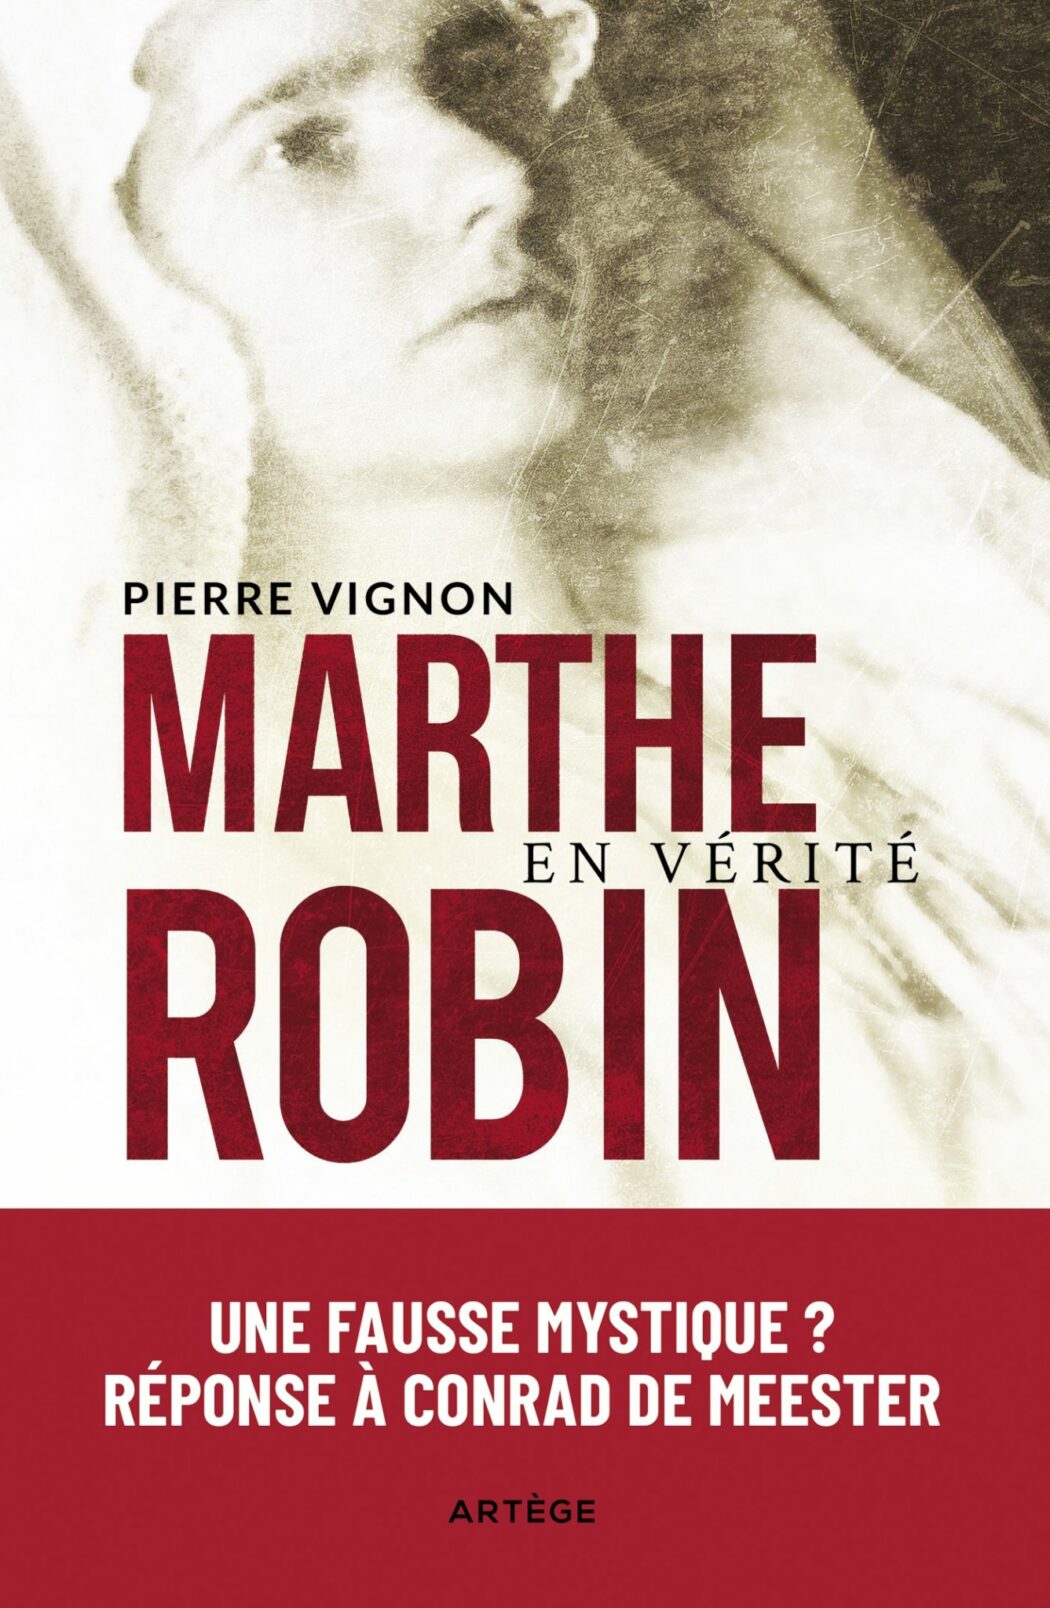 Marthe Robin : le père Vignon répond au carme Conrad de Meester